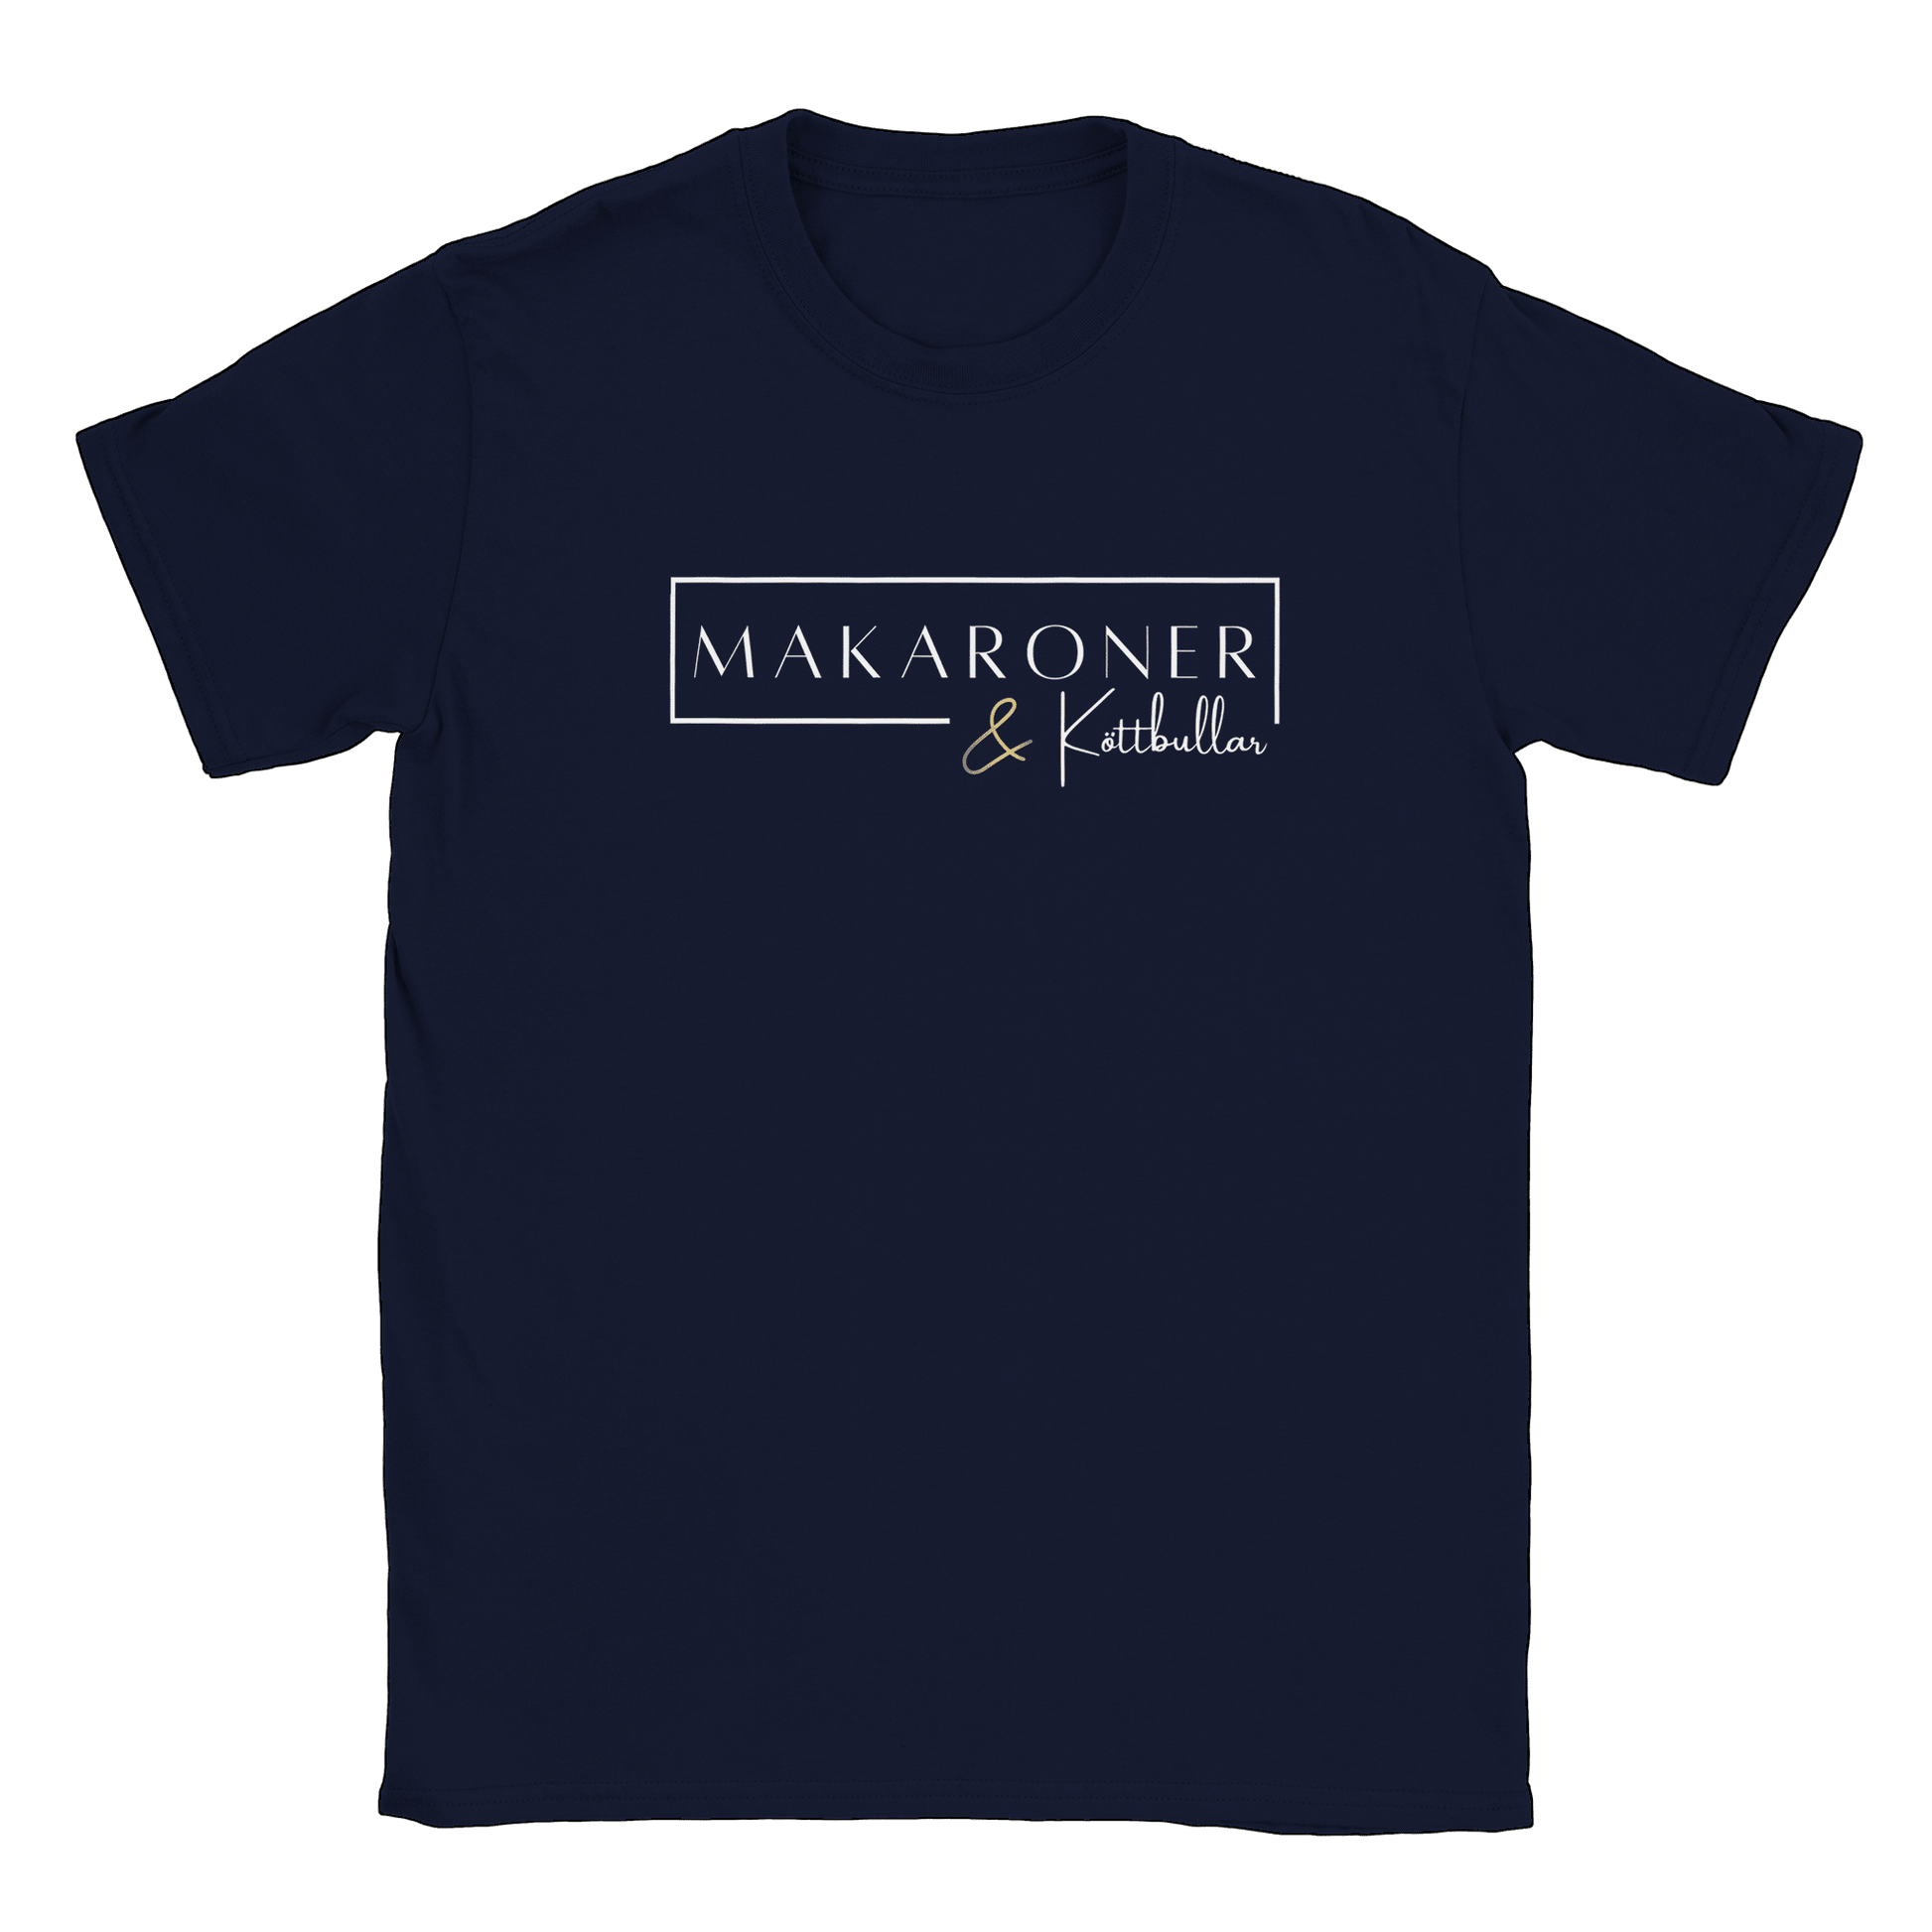 Makaroner och Köttbullar - T-shirt Navy